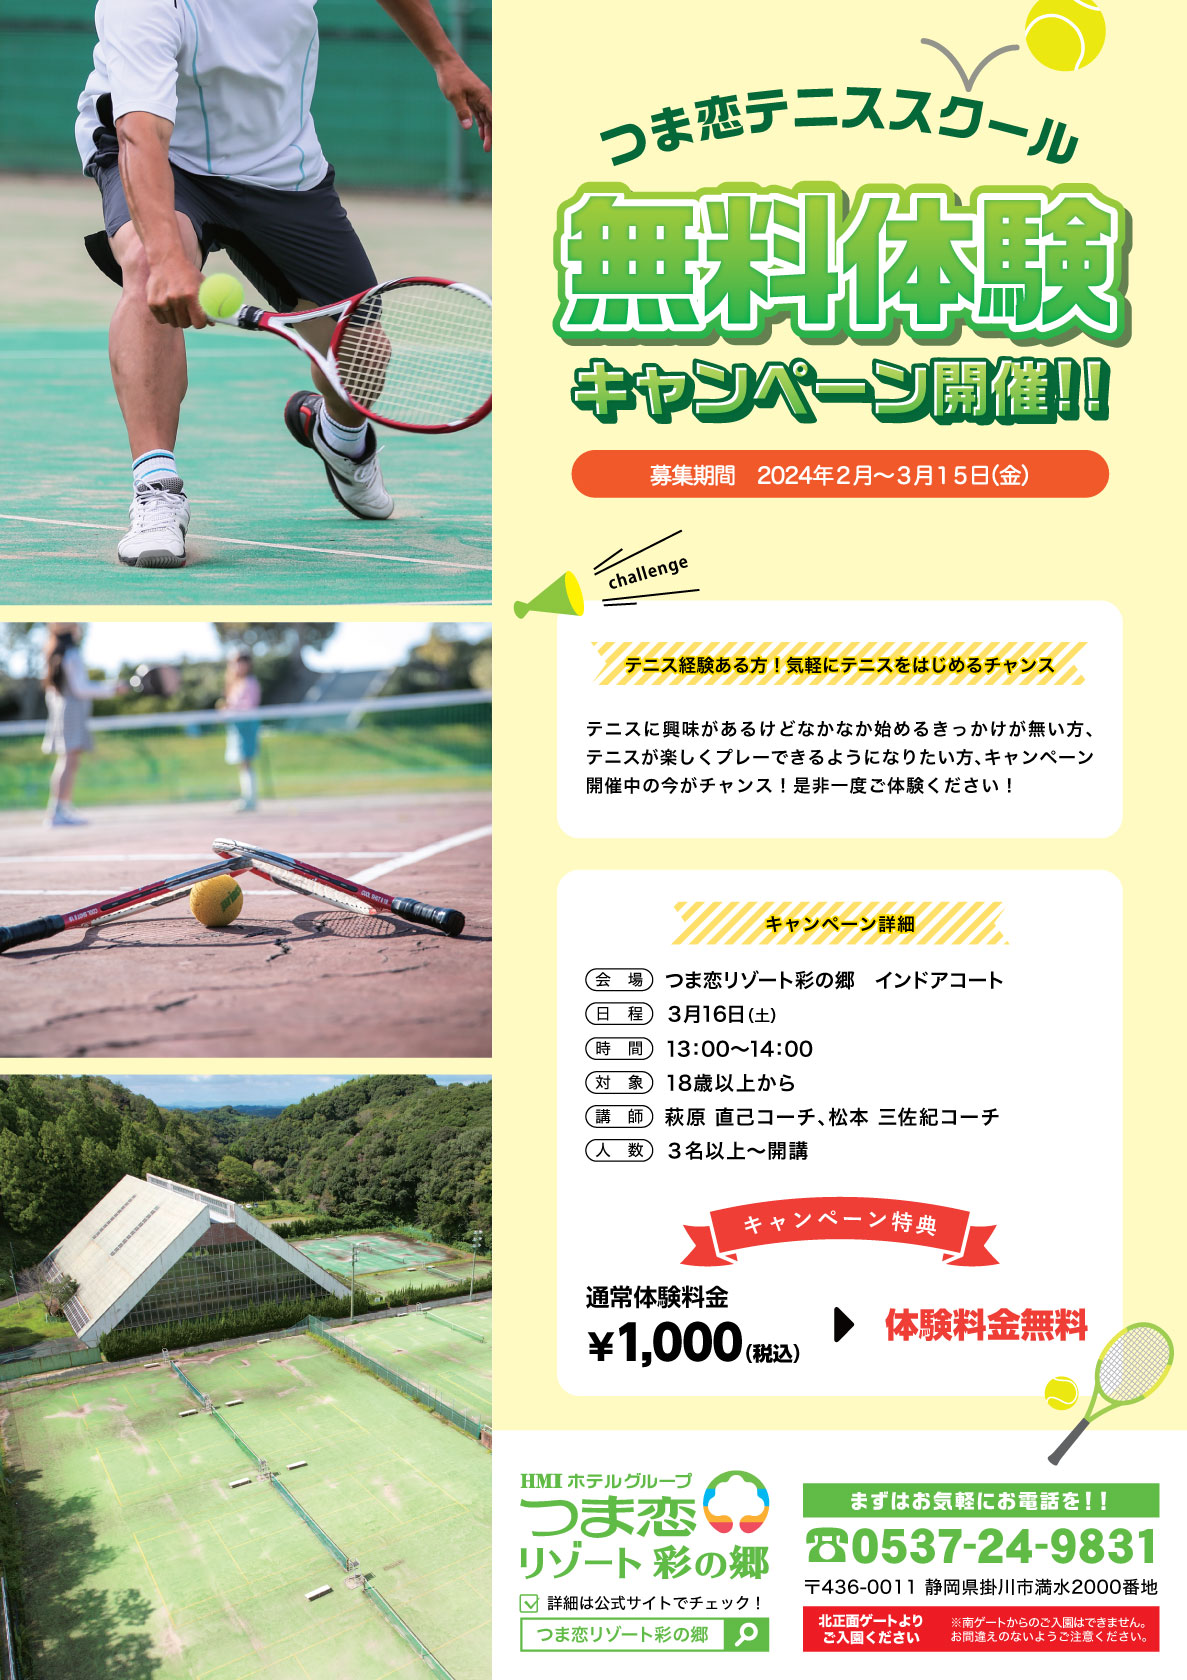 つま恋テニススクール無料体験キャンペーン開催